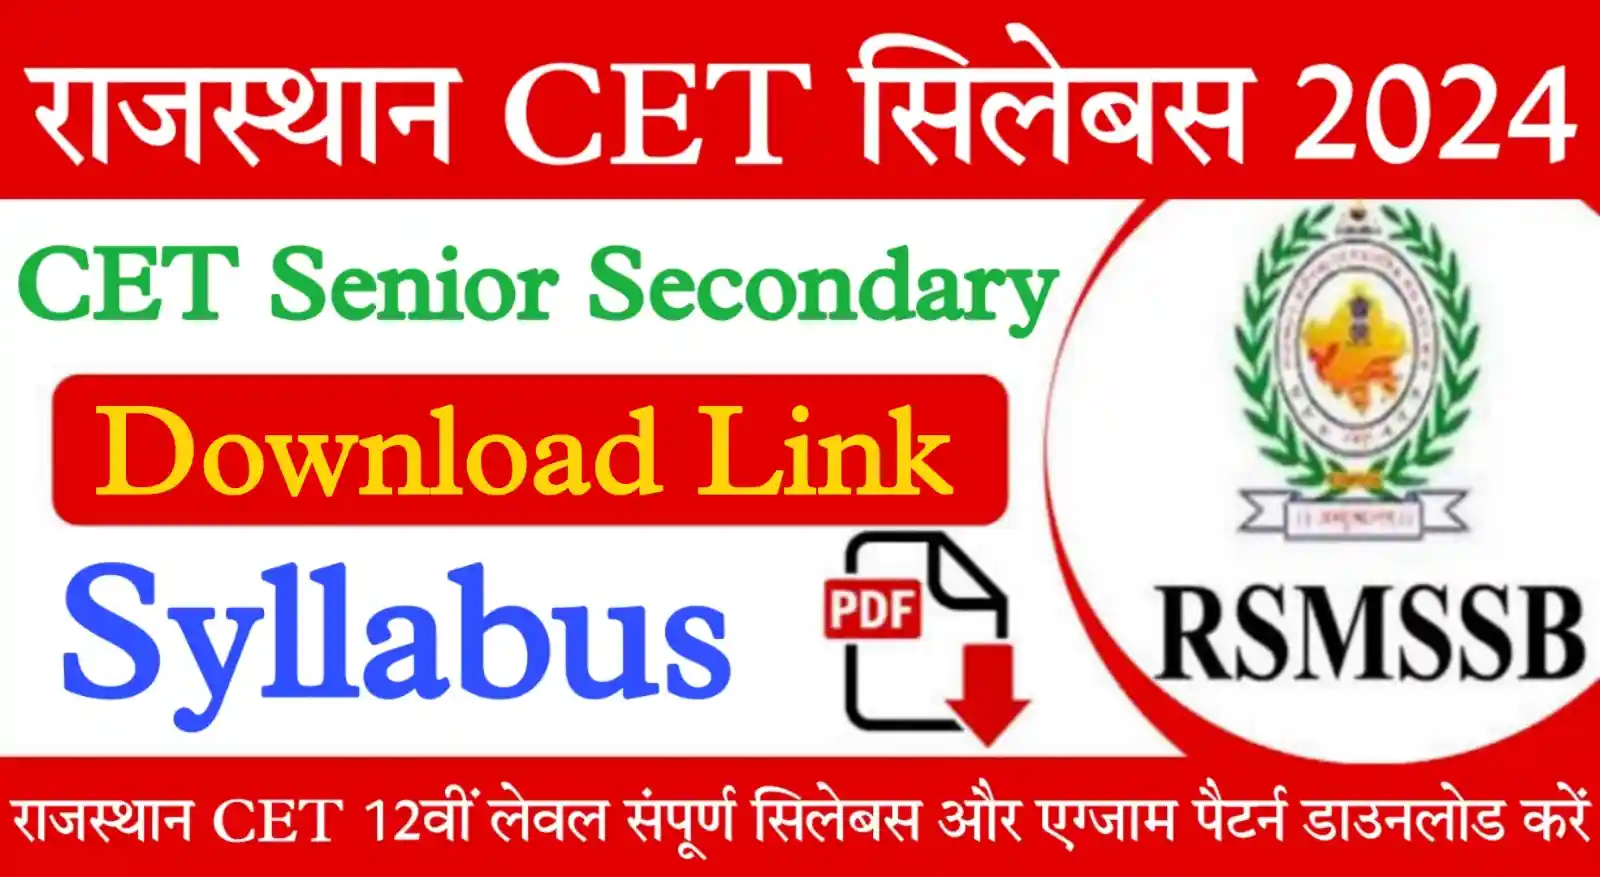 Rajasthan CET Senior Secondary Level Syllabus 2024 राजस्थान सीईटी 12वीं लेवल सिलेबस 2024 यहां से डाउनलोड करें